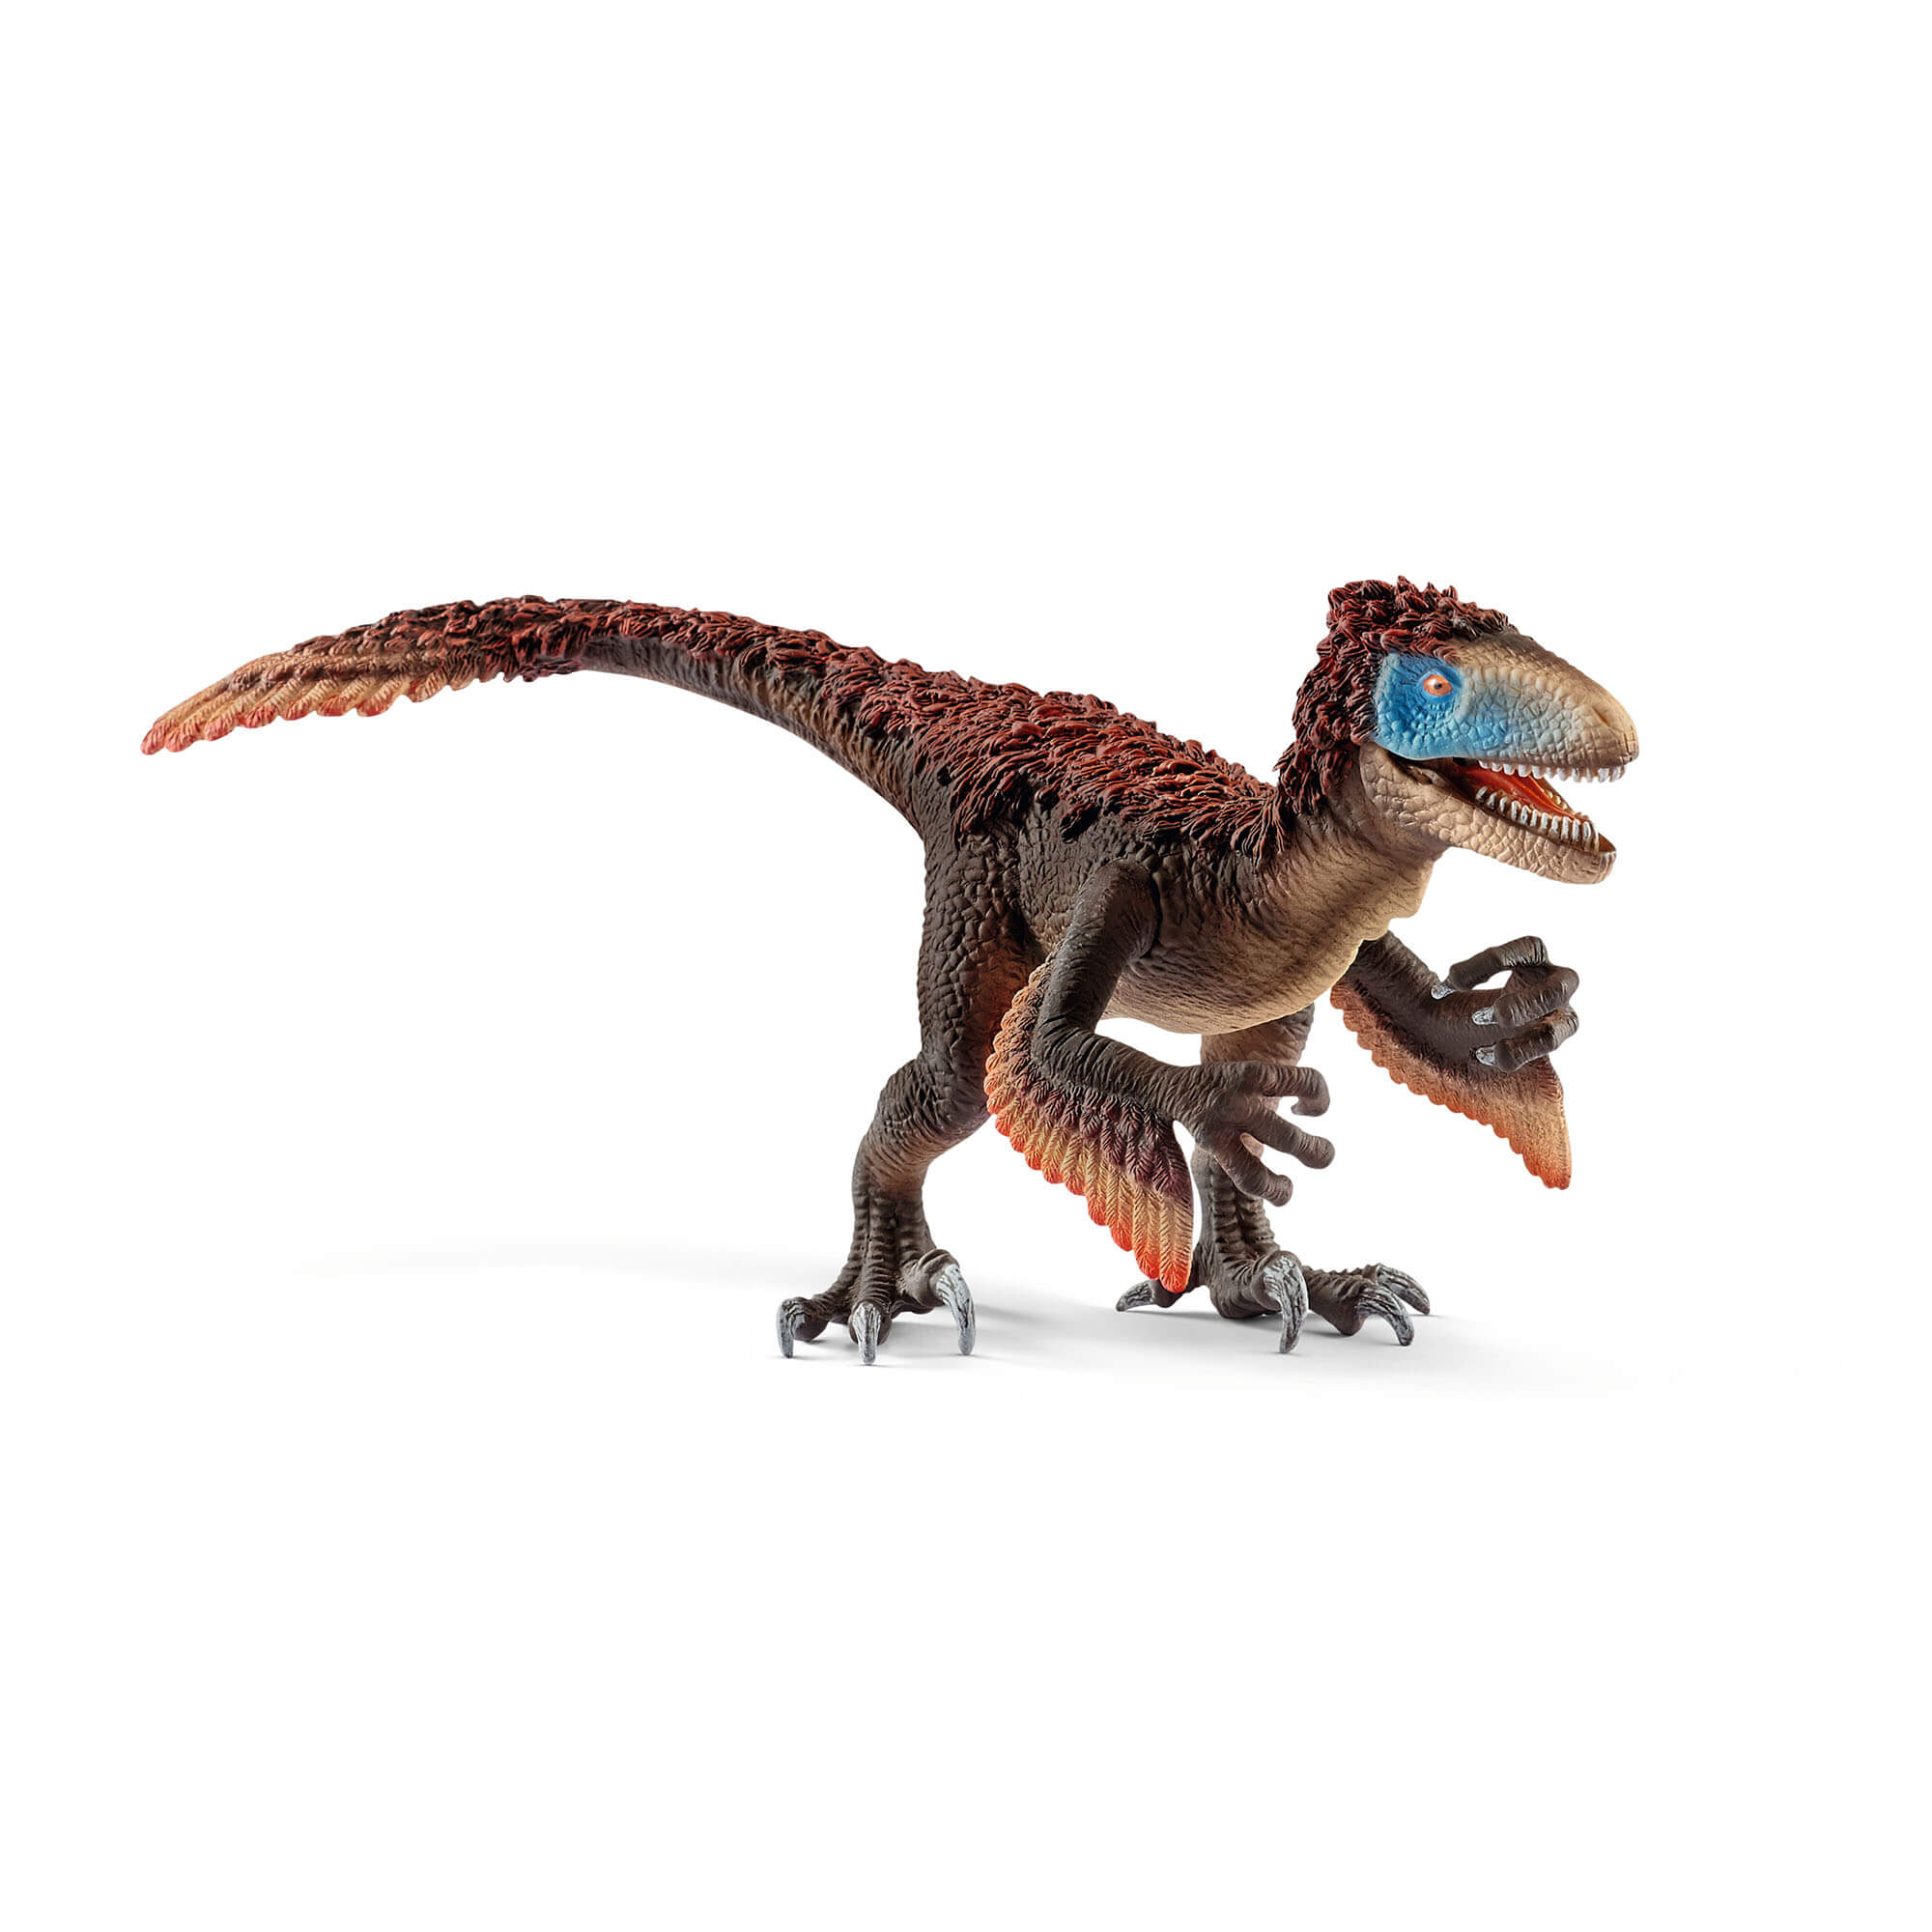 Schleich Dinosaurs Utahraptor Figure